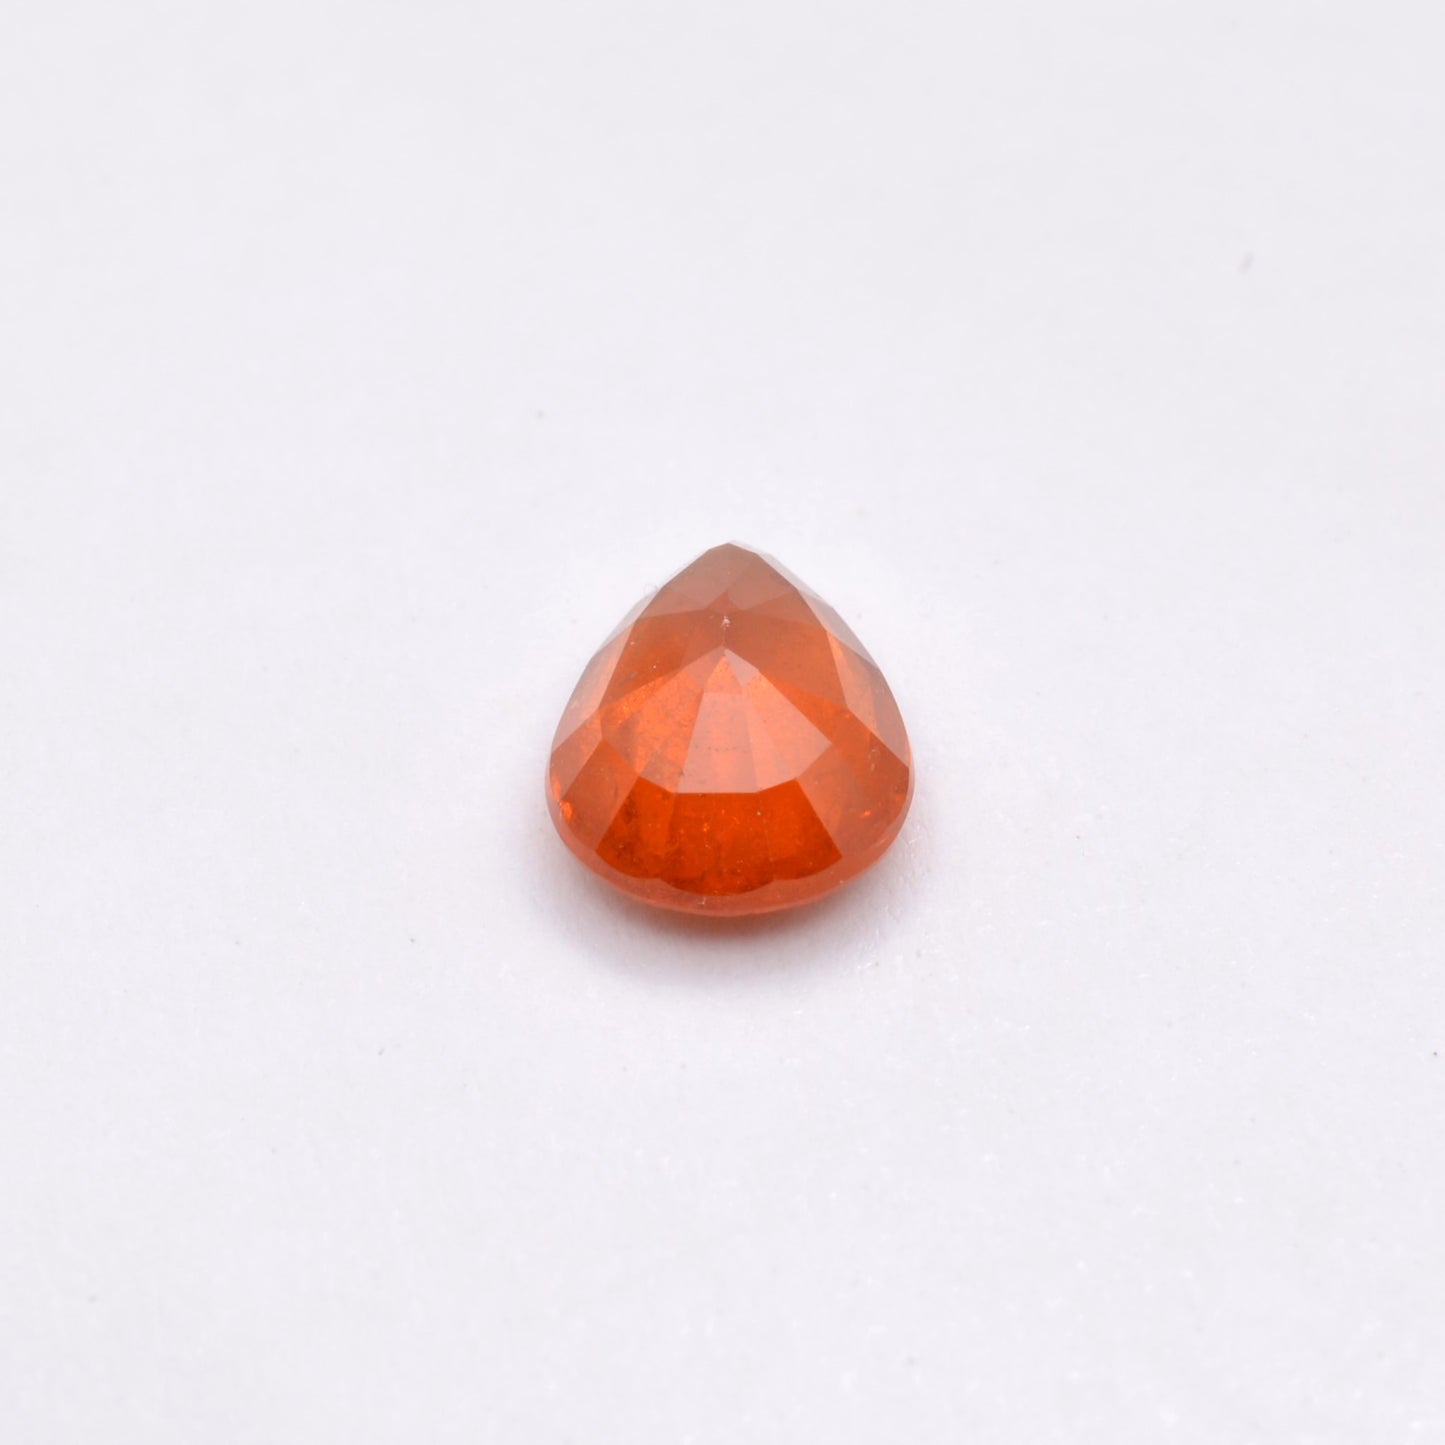 Grenat Spessartite Poire 2,57ct - pierre précieuse - gemme